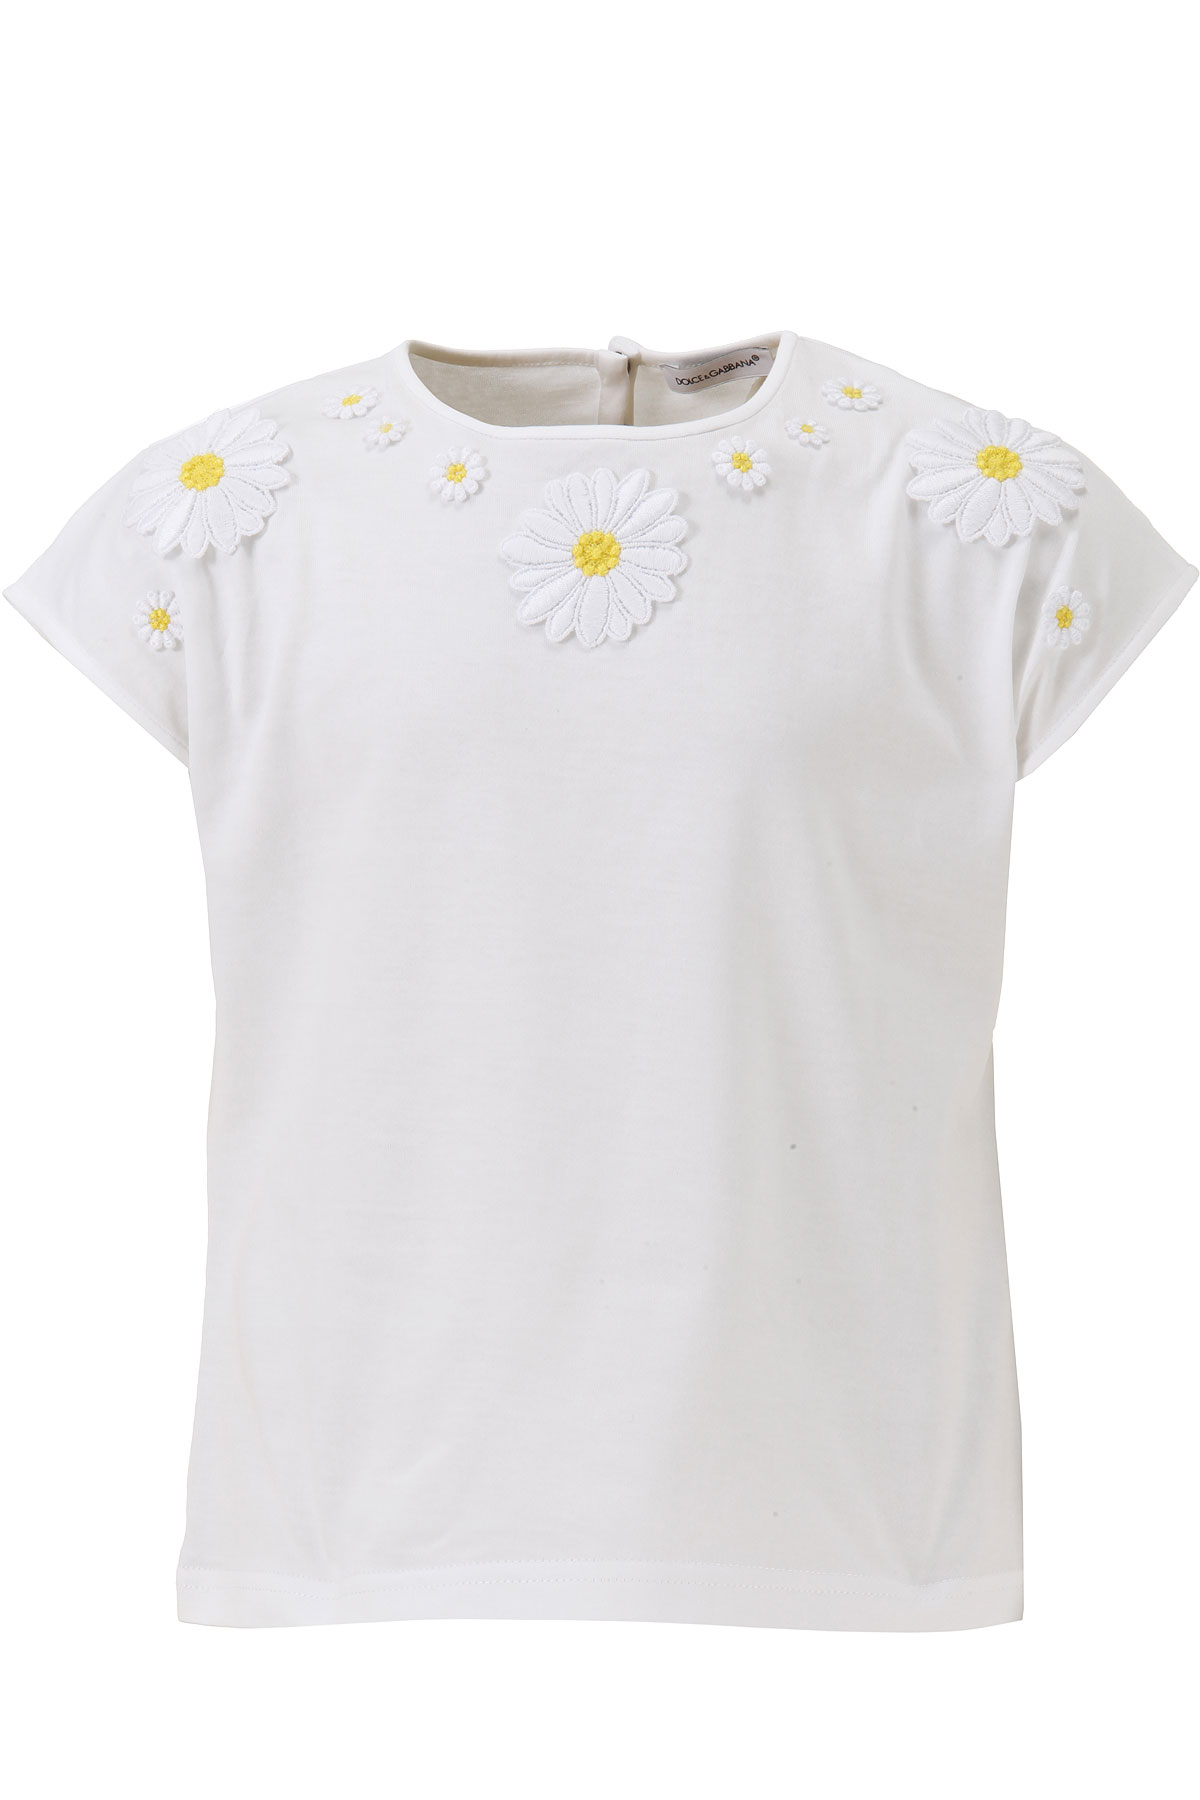 Dolce & Gabbana Kinder T-Shirt für Mädchen Günstig im Outlet Sale, Weiss, Baumwolle, 2017, 5Y 6Y